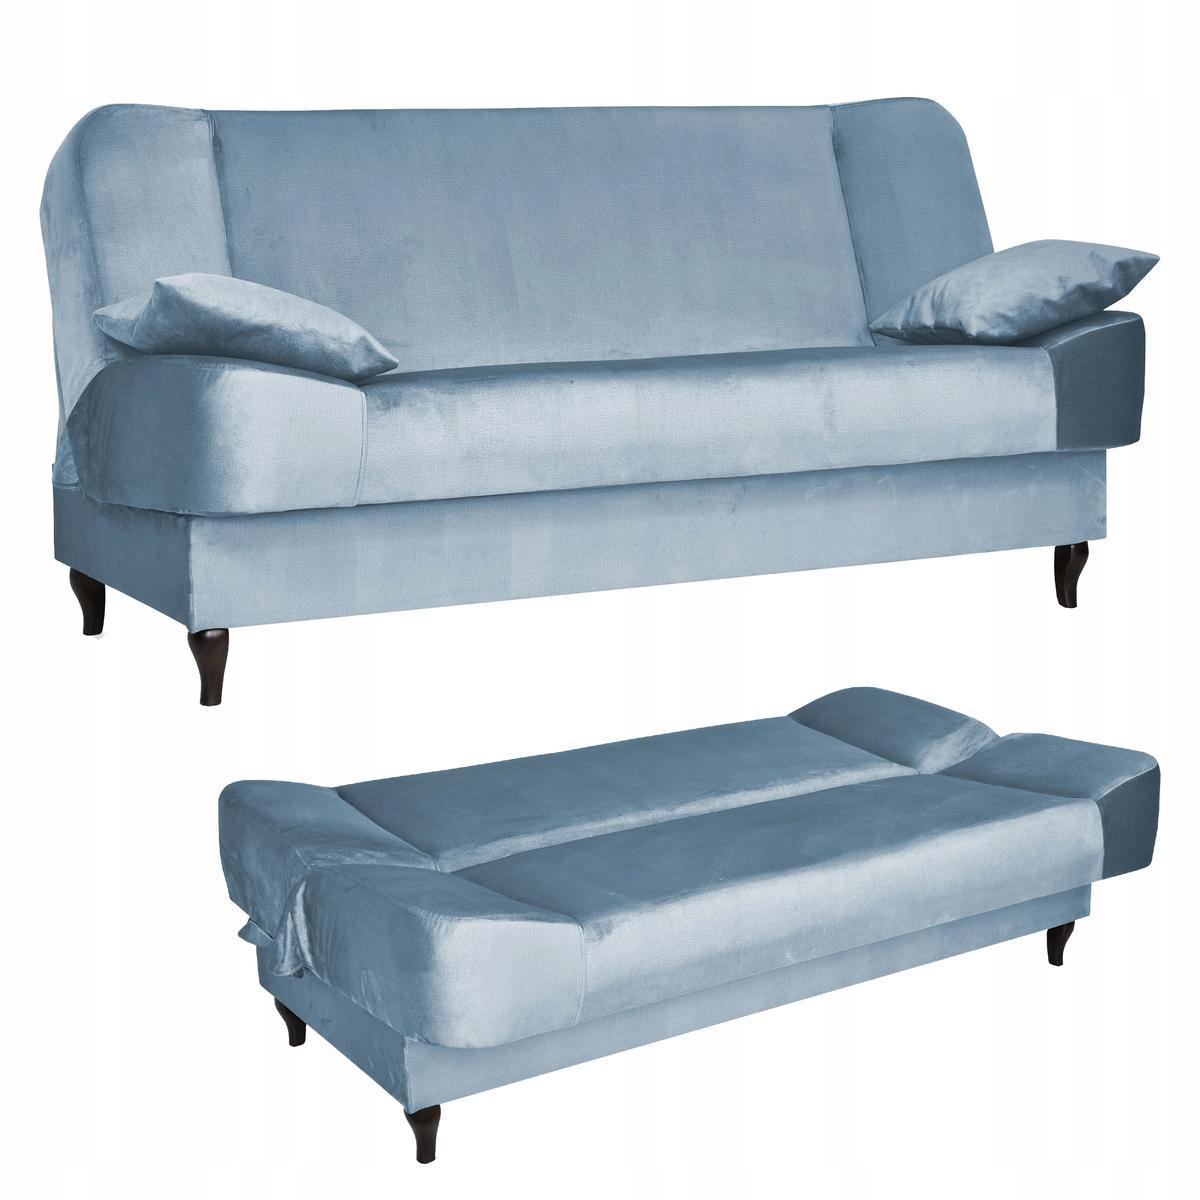 Wersalka SARA 200x95 cm błękitna rozkładana kanapa z pojemnikiem sofa do salonu Monolith nr. 1